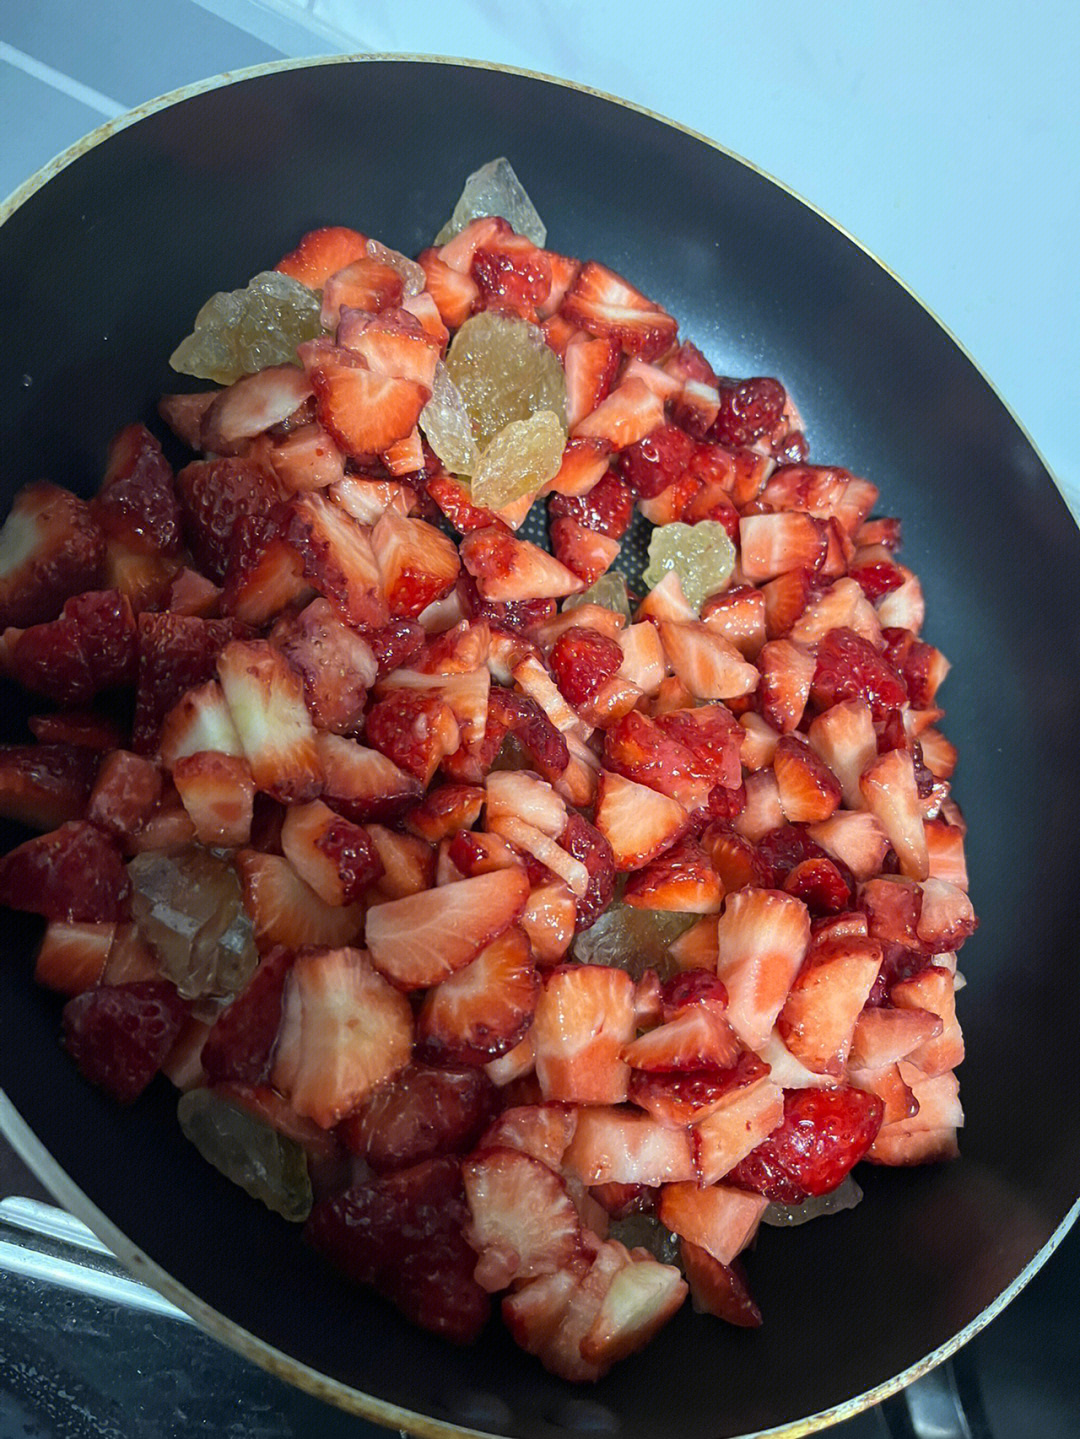 自制草莓酱最近开始研究各种美食